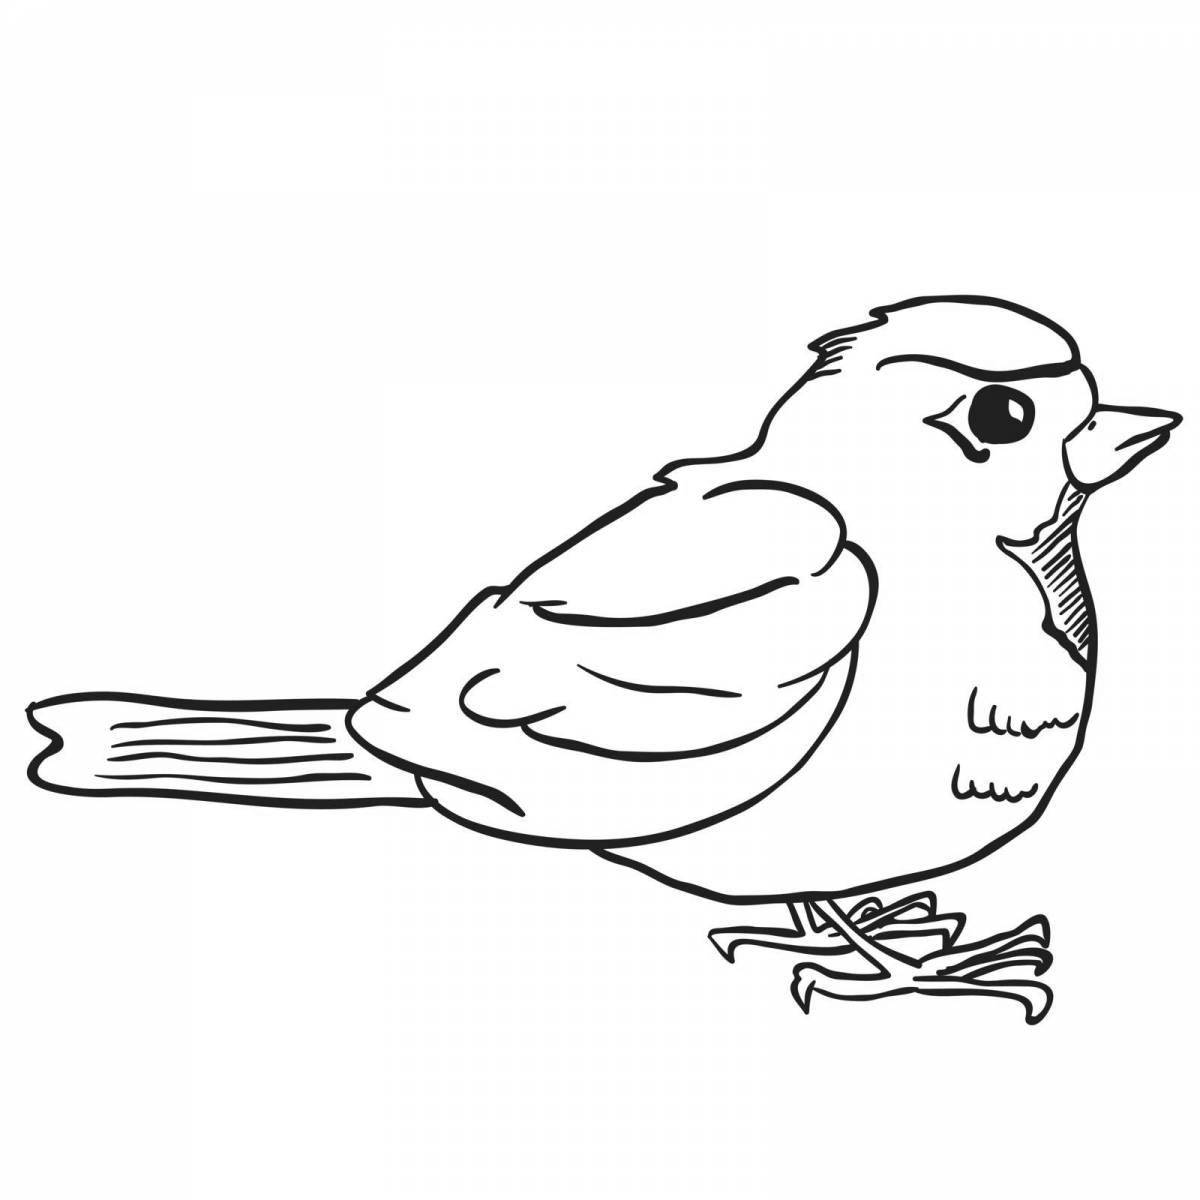 Bright disheveled sparrow Grade 3